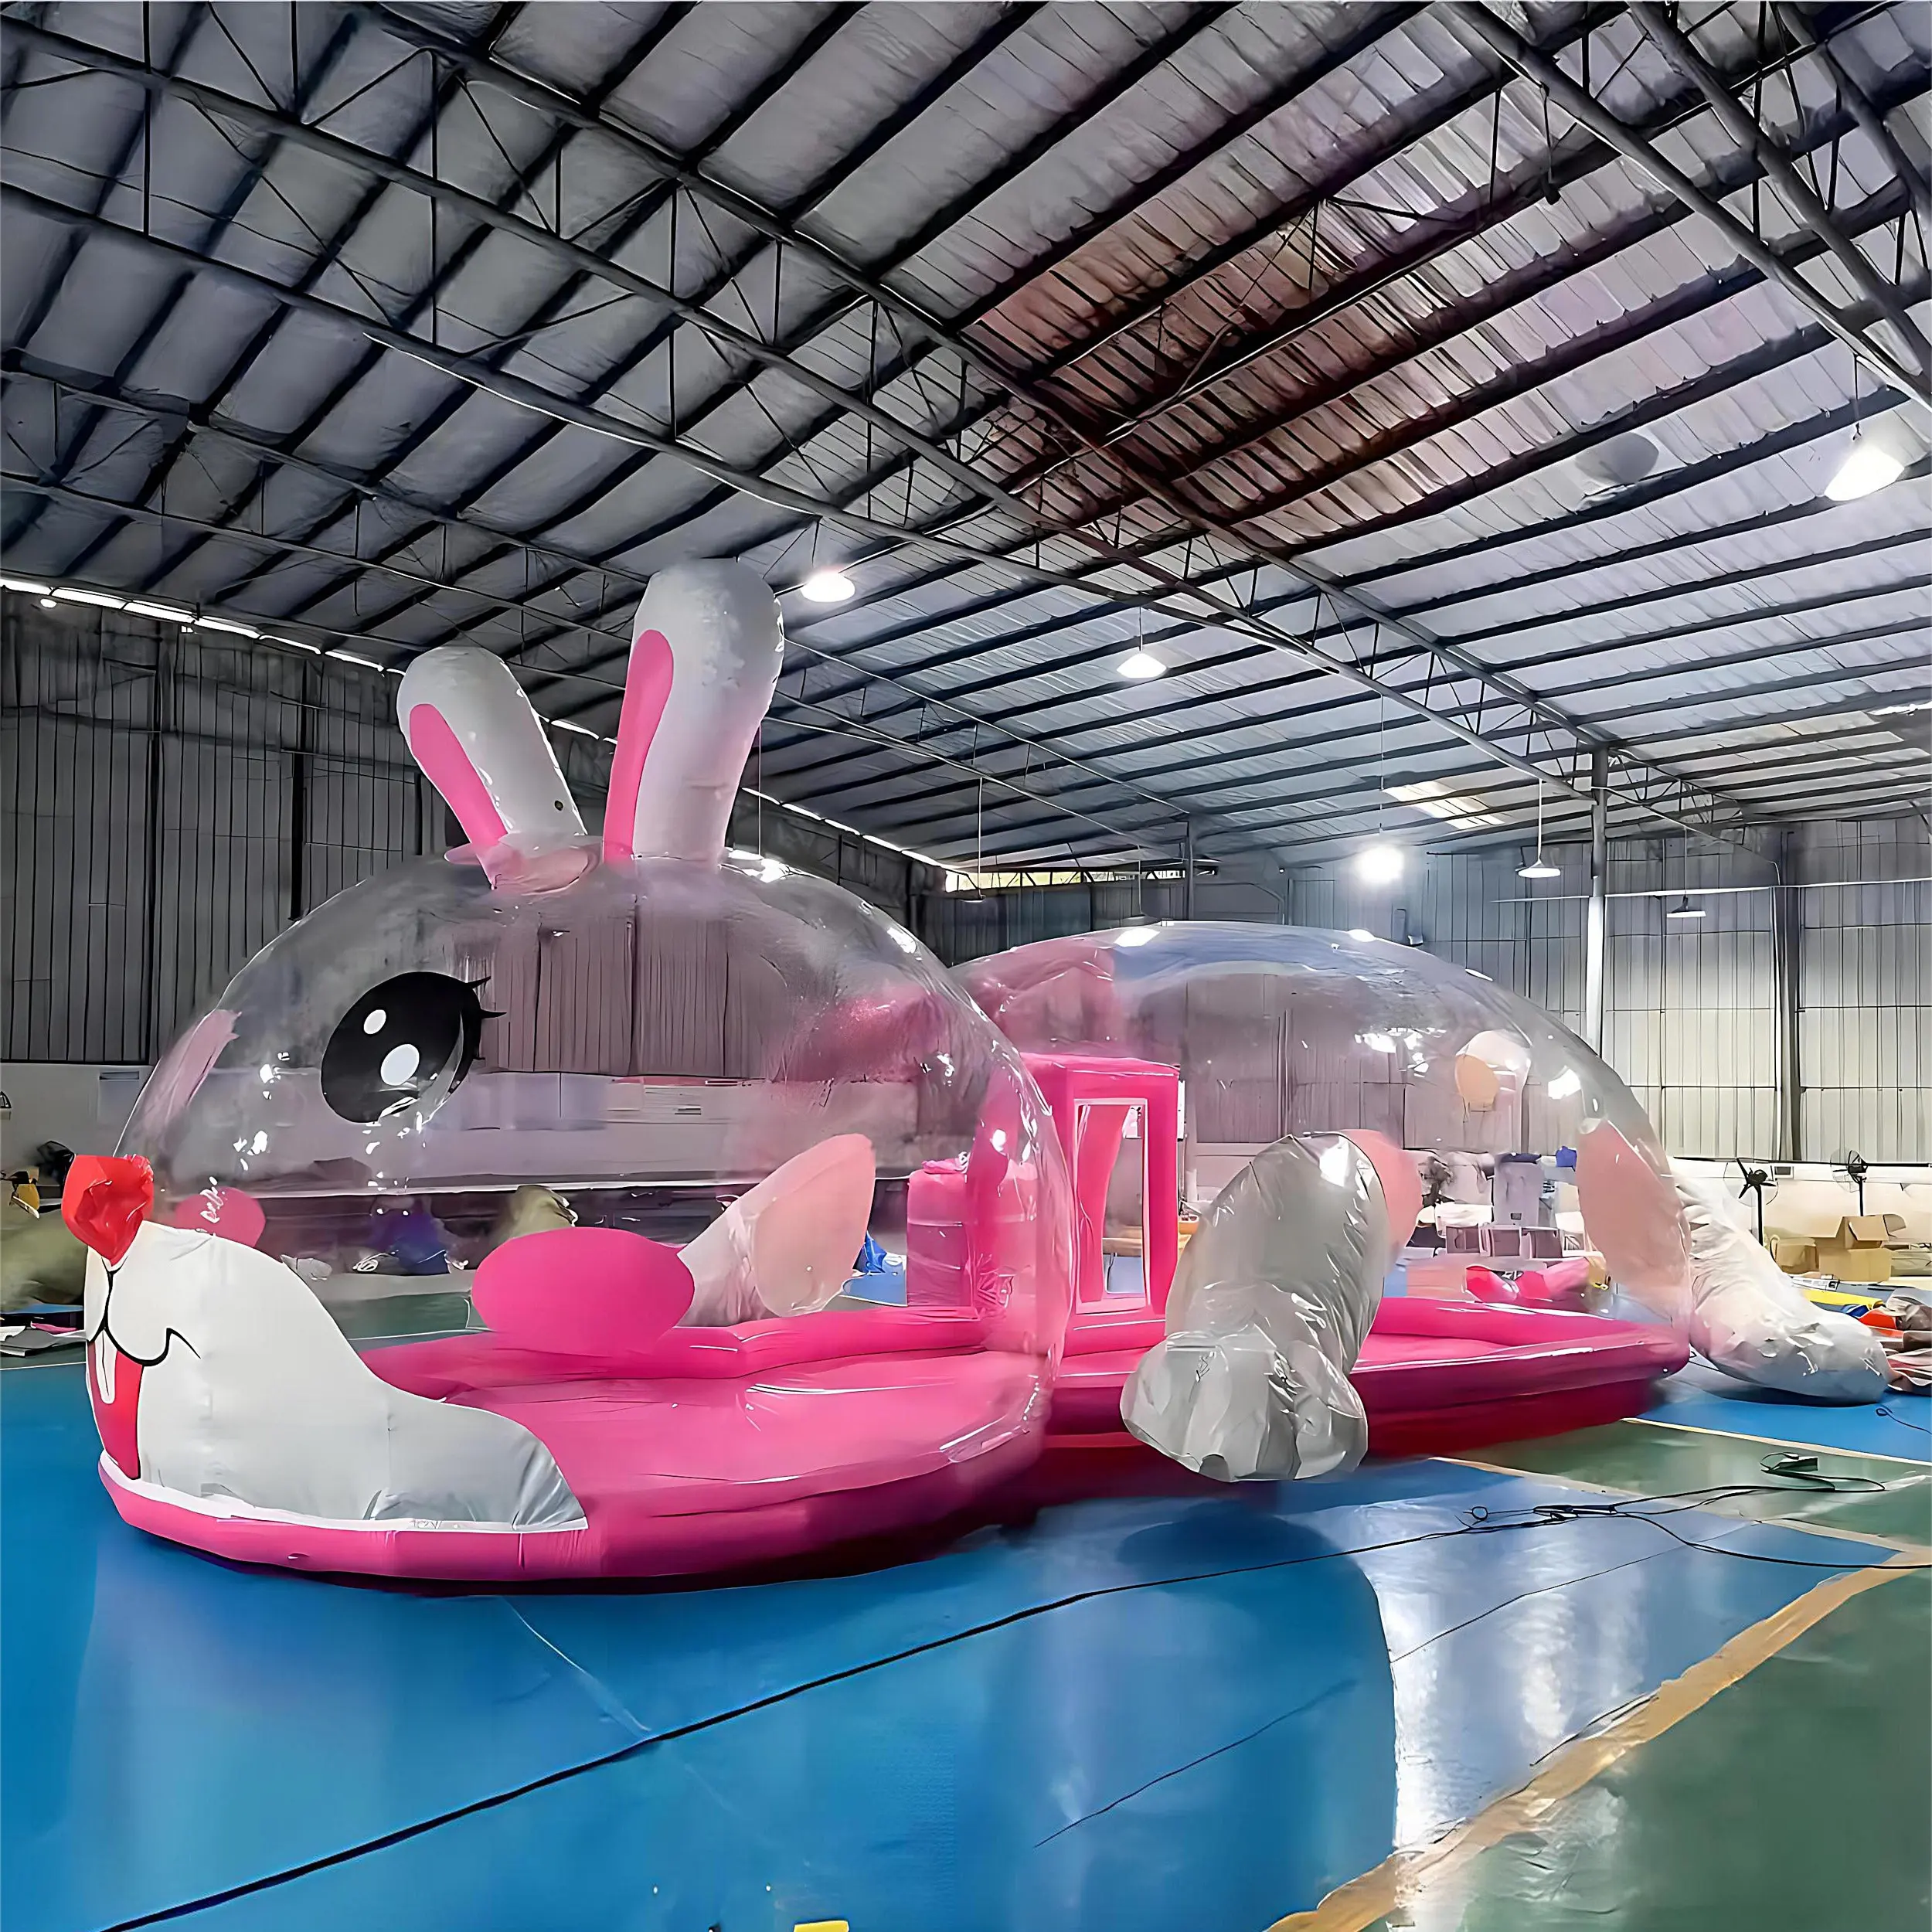 Tenda rumah gelembung tiup, peralatan hiburan transparan istana kristal tema kelinci dengan lubang bola dan Slide untuk anak-anak